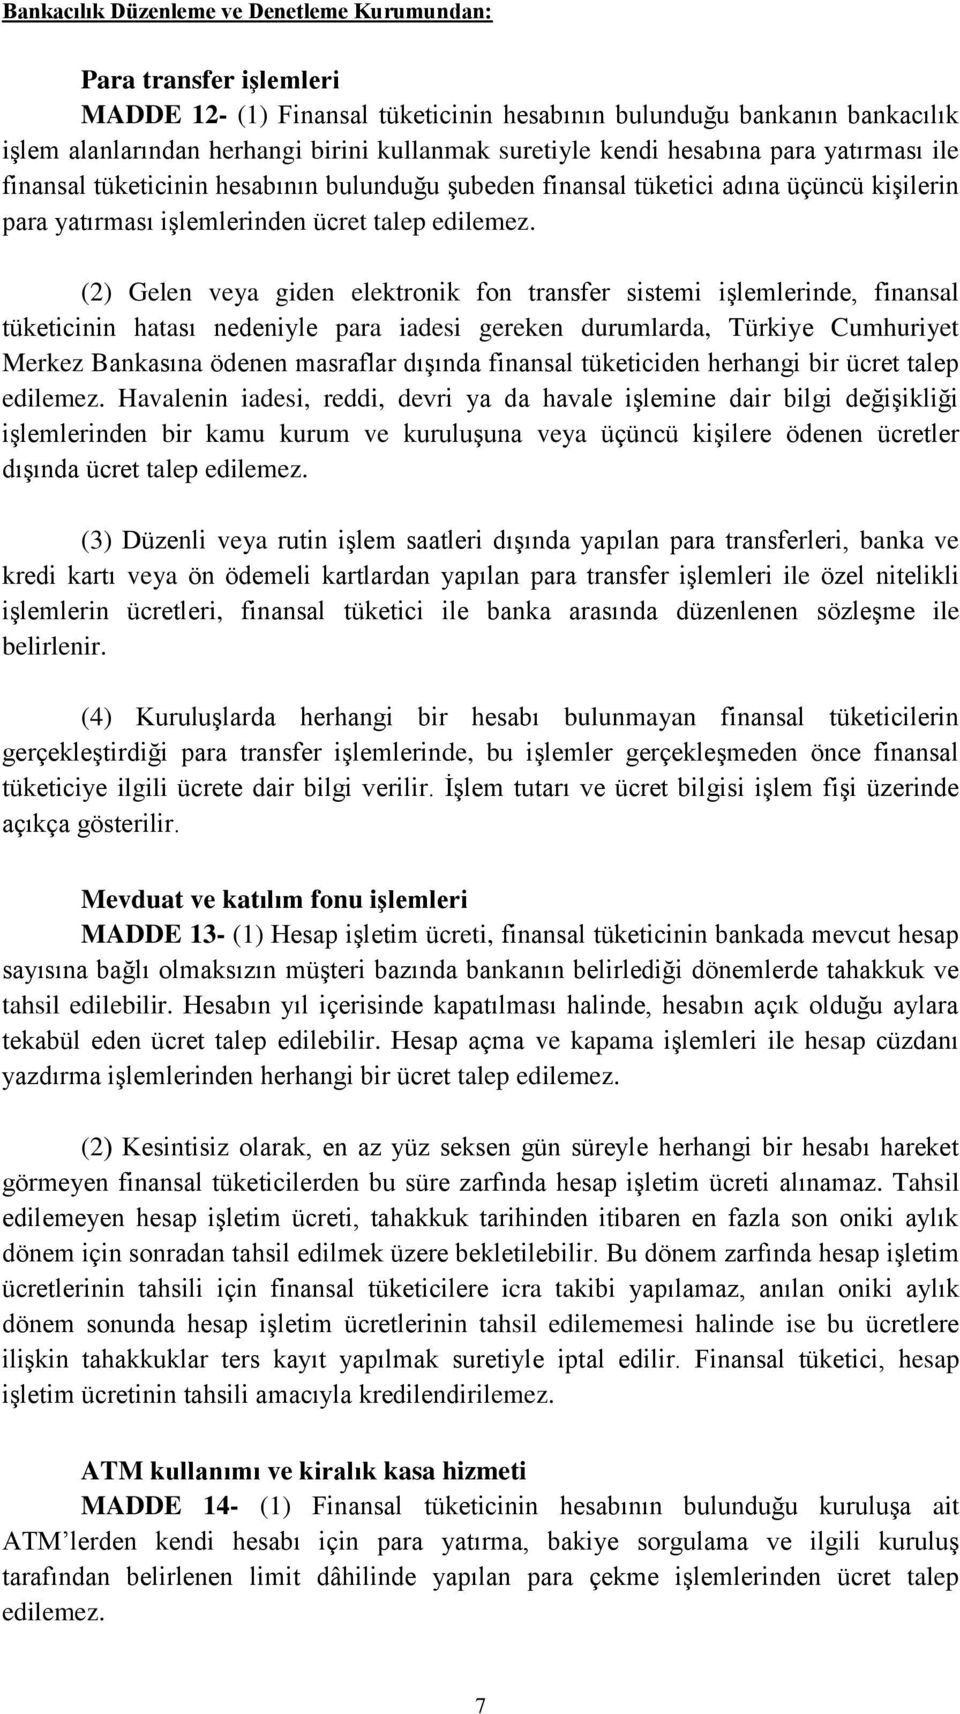 (2) Gelen veya giden elektronik fon transfer sistemi işlemlerinde, finansal tüketicinin hatası nedeniyle para iadesi gereken durumlarda, Türkiye Cumhuriyet Merkez Bankasına ödenen masraflar dışında